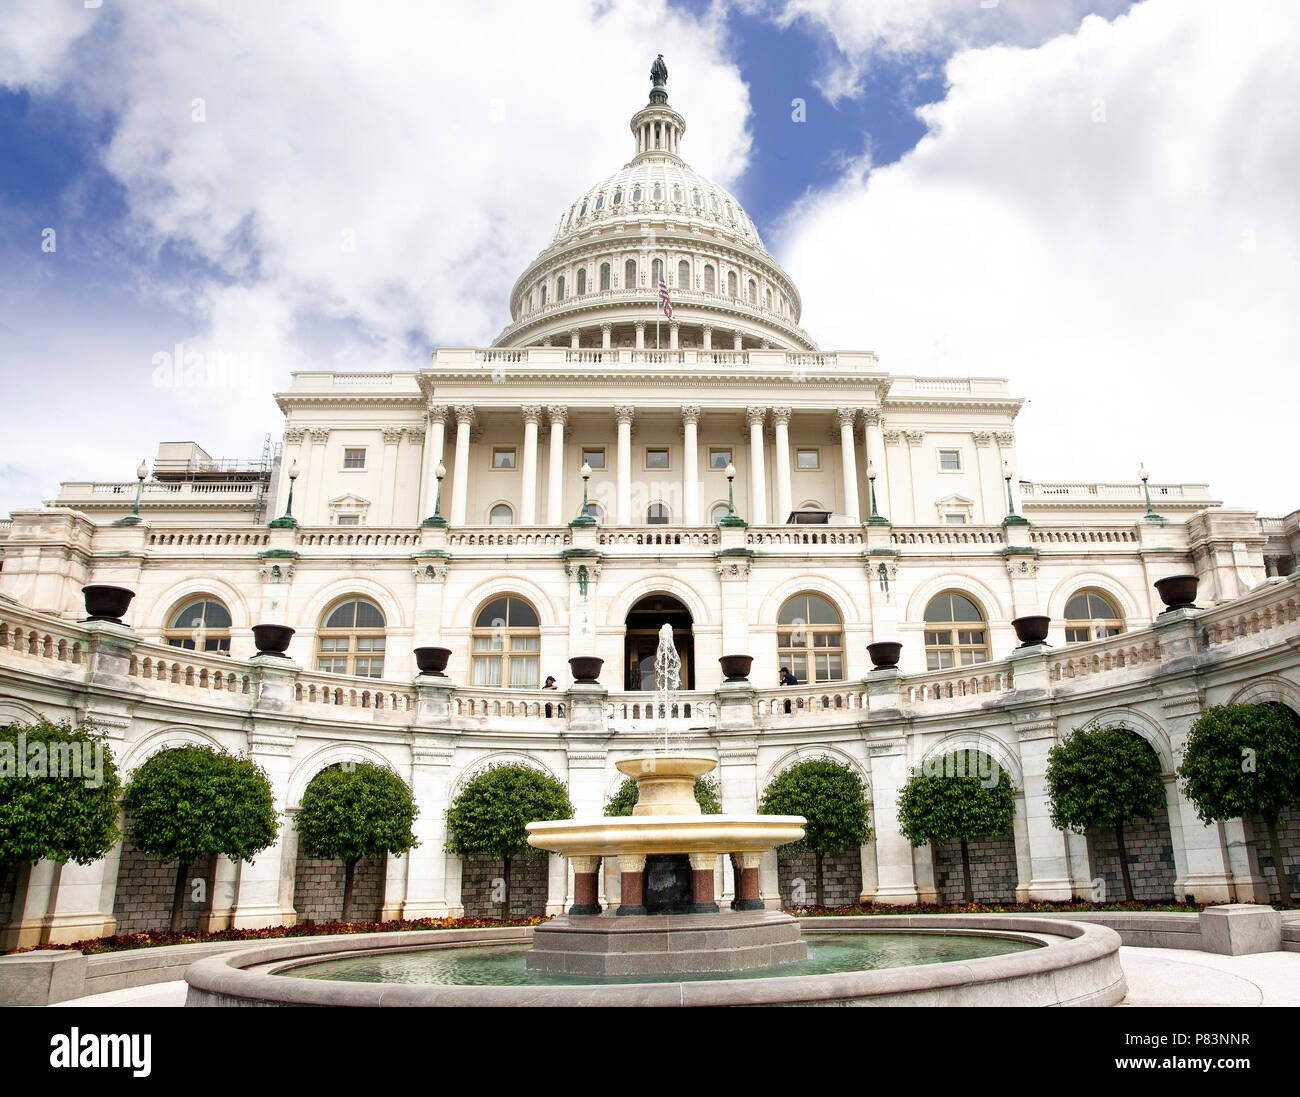 Das Kapitol, den Senat und das Repräsentantenhaus auf der National Mall in Washington, DC. Stockfoto